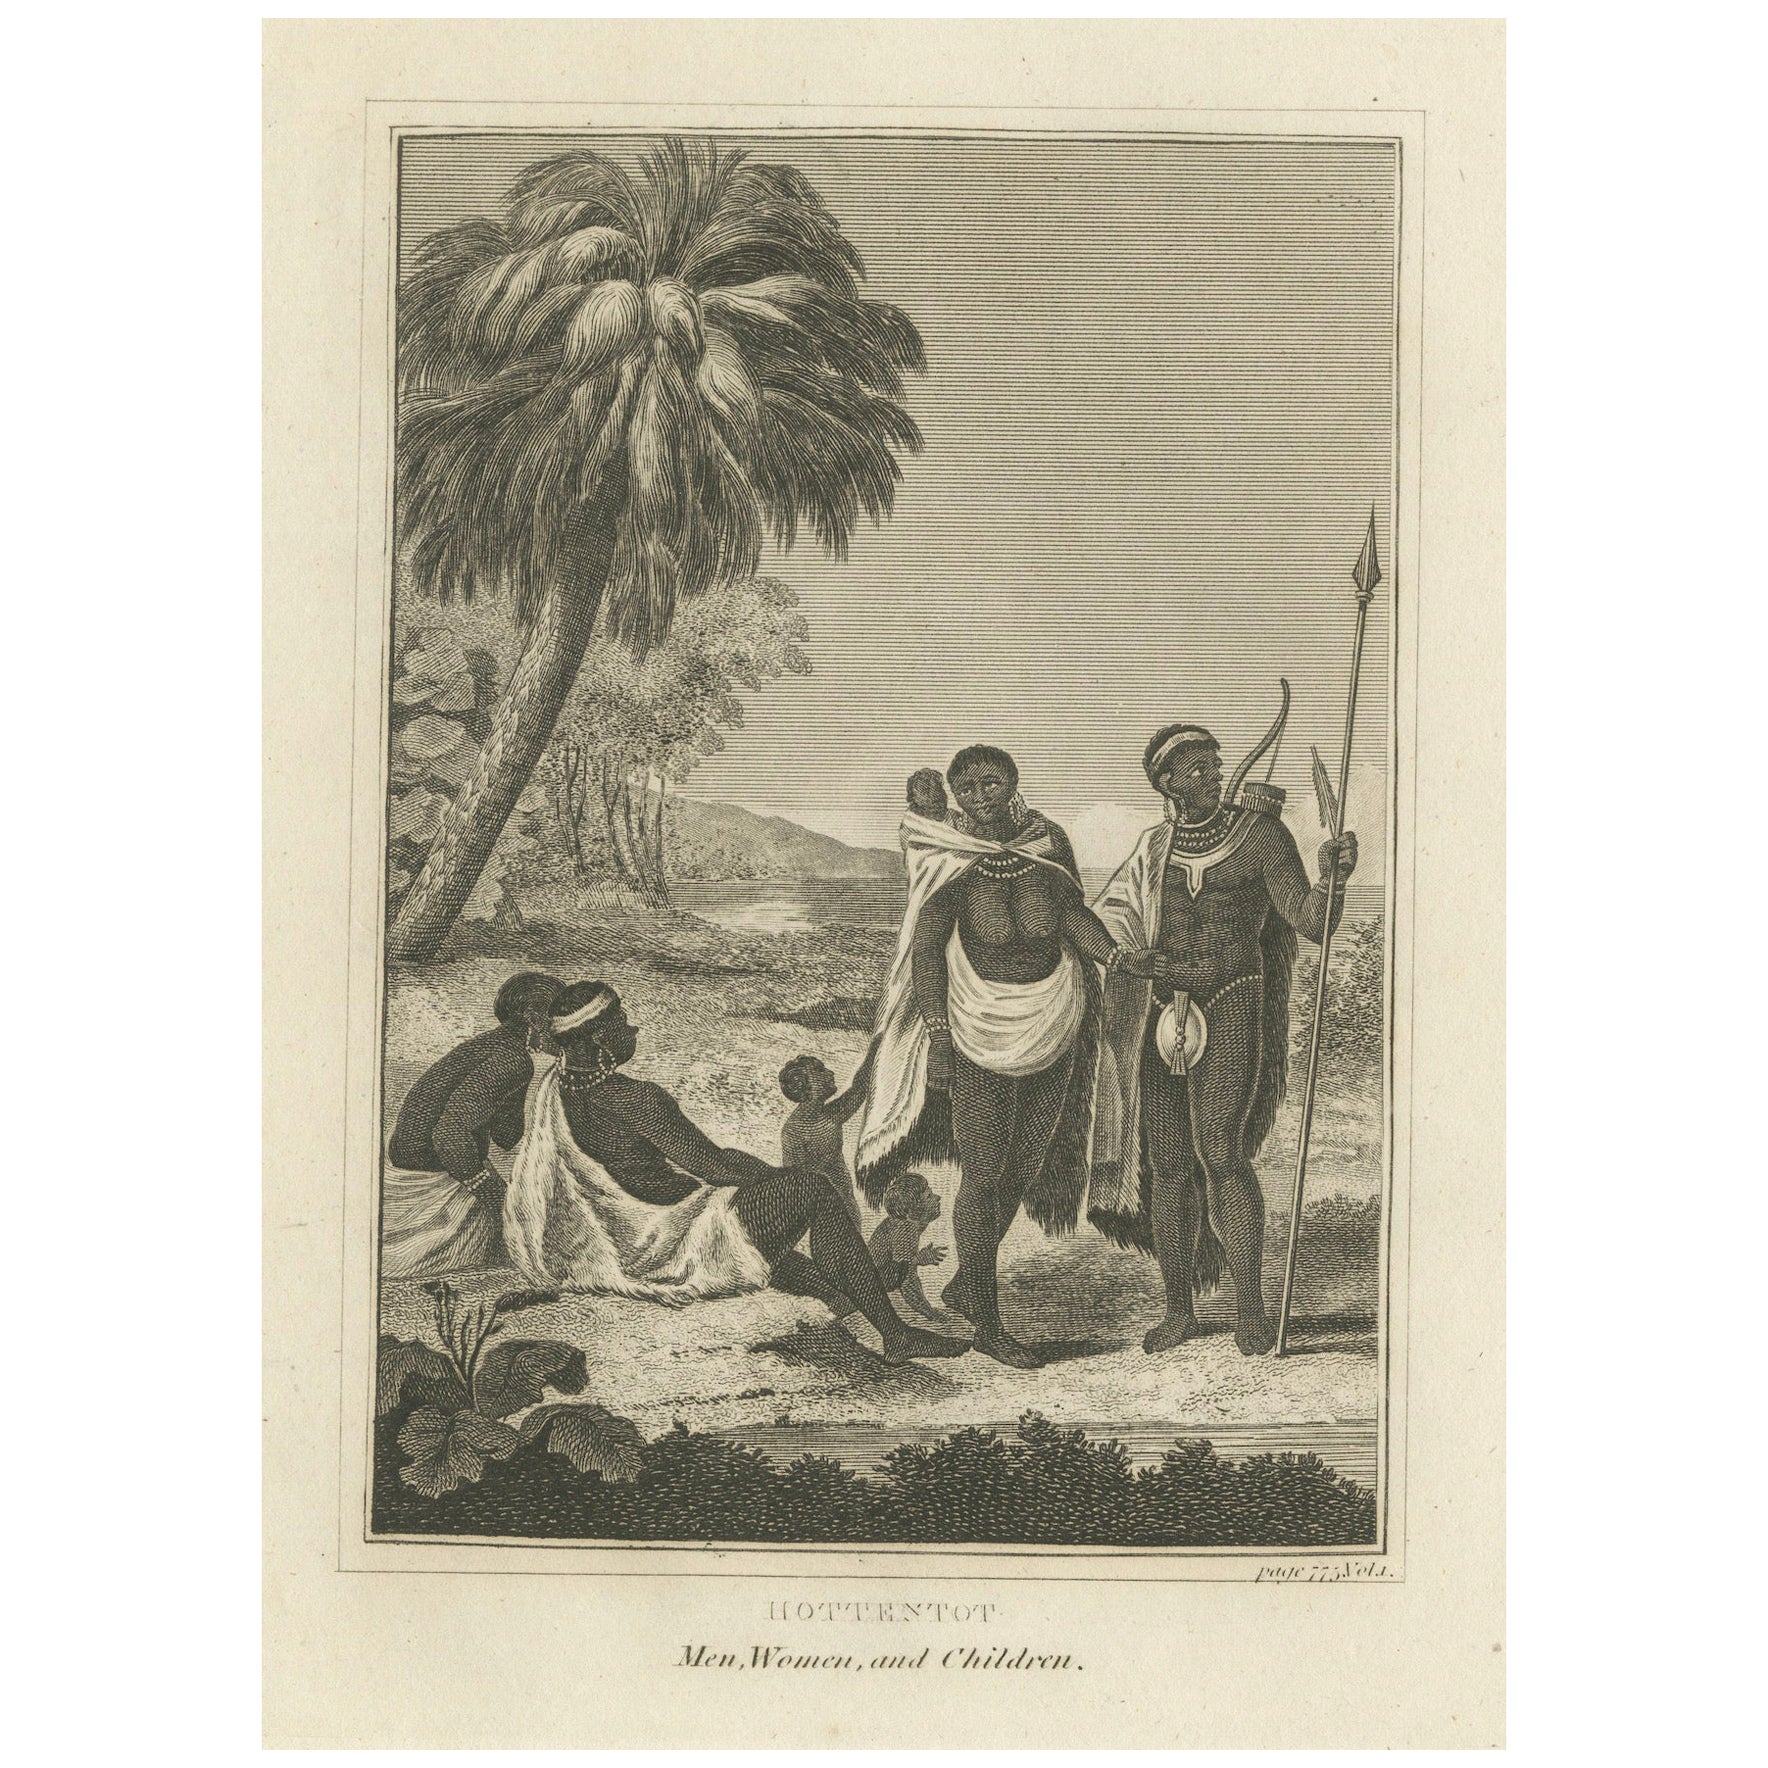 The Khoikhoi of Southwestern Africa, Originalstich von ca. 1801